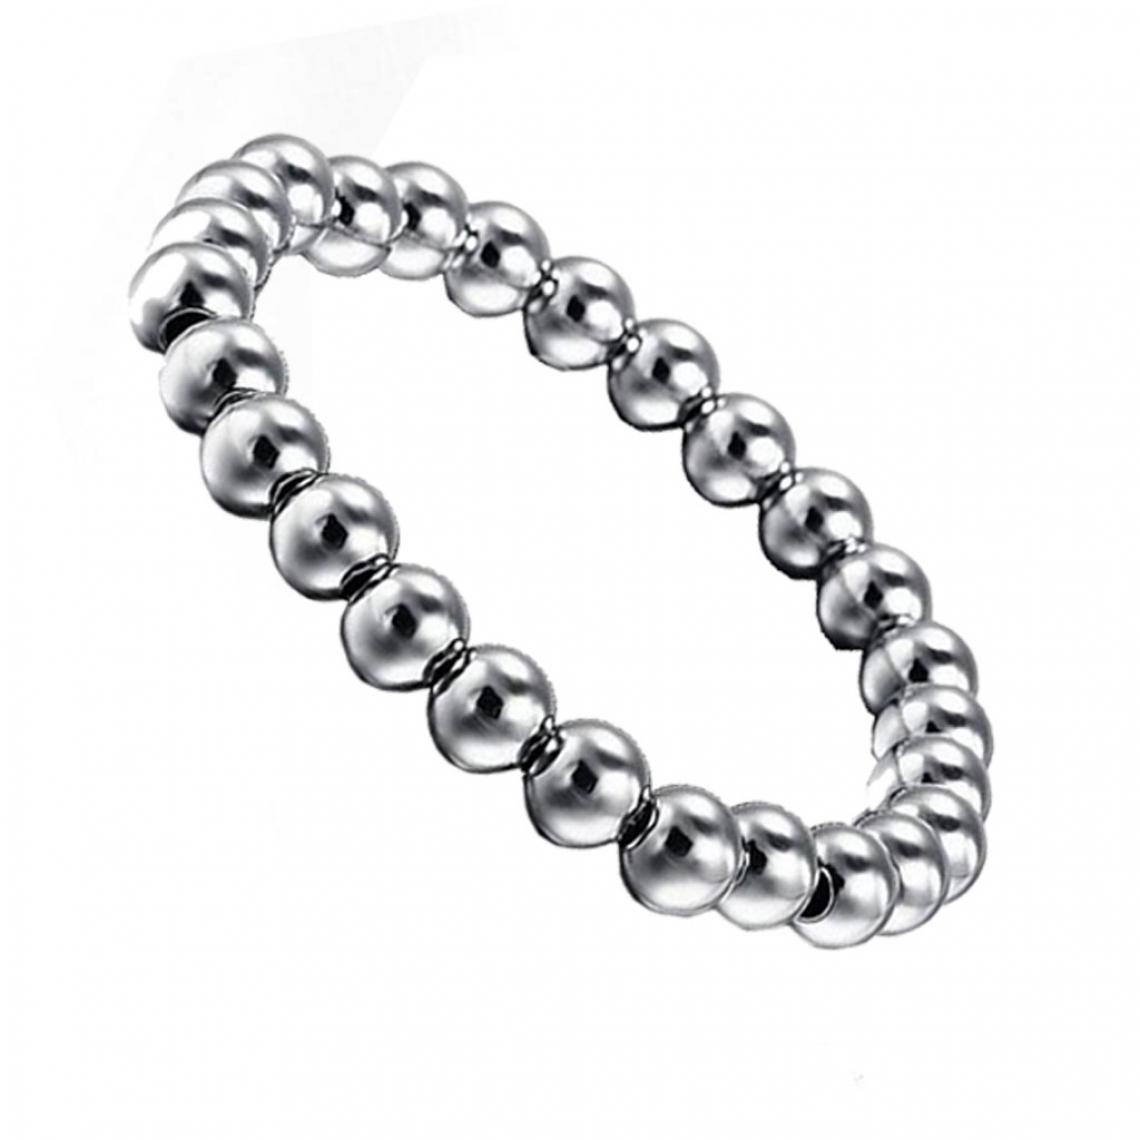 marque generique - Les Femmes 8mm Perles Rondes En Acier Inox Charme Bracelet élastique Bijoux Décoration en Argent - Bracelet connecté